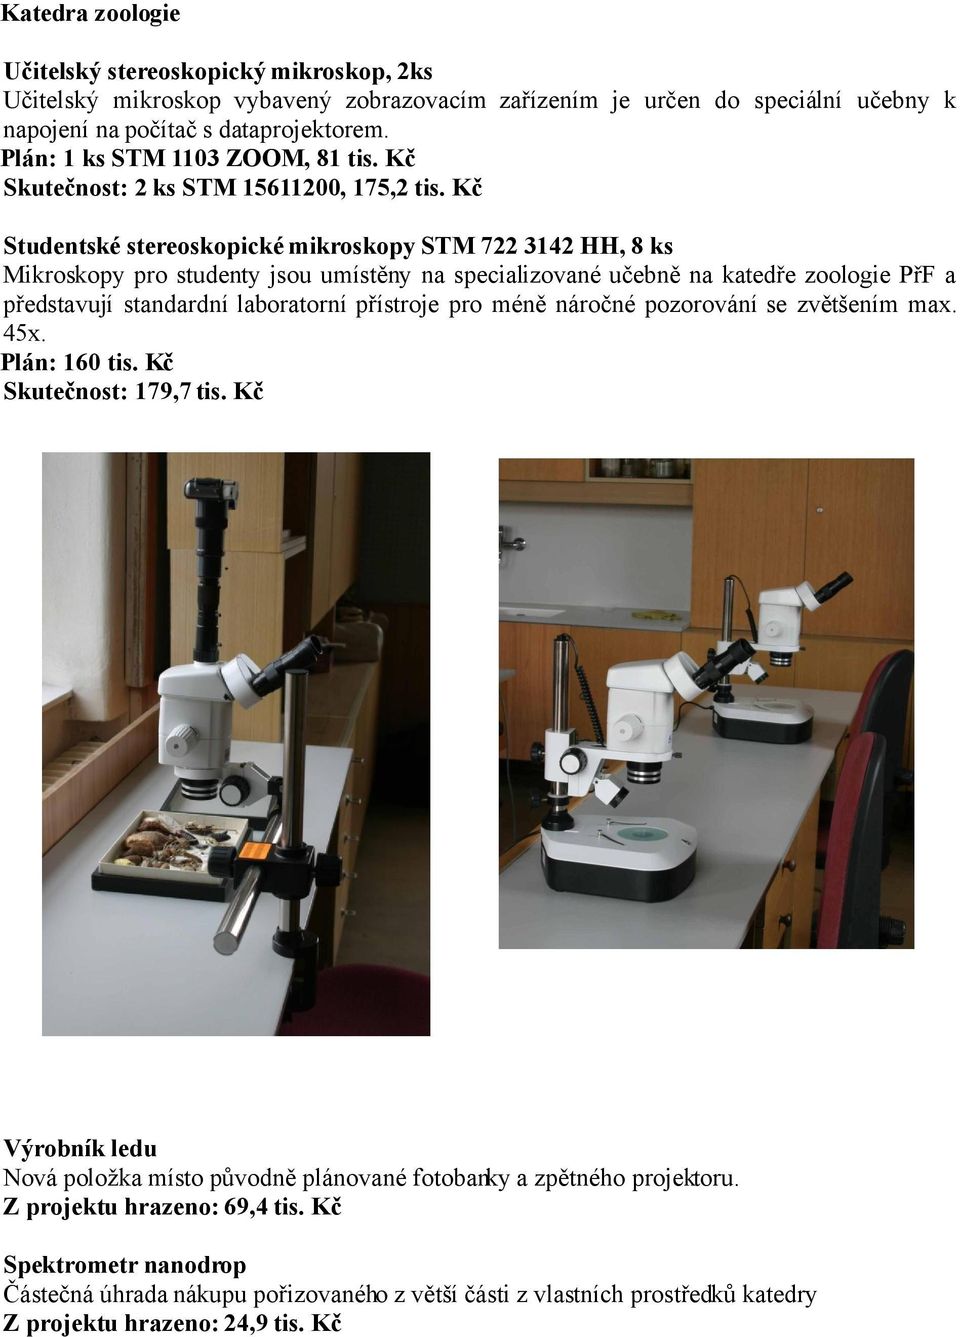 Kč Studentské stereoskopické mikroskopy STM 722 3142 HH, 8 ks Mikroskopy pro studenty jsou umístěny na specializované učebně na katedře zoologie PřF a představují standardní laboratorní přístroje pro